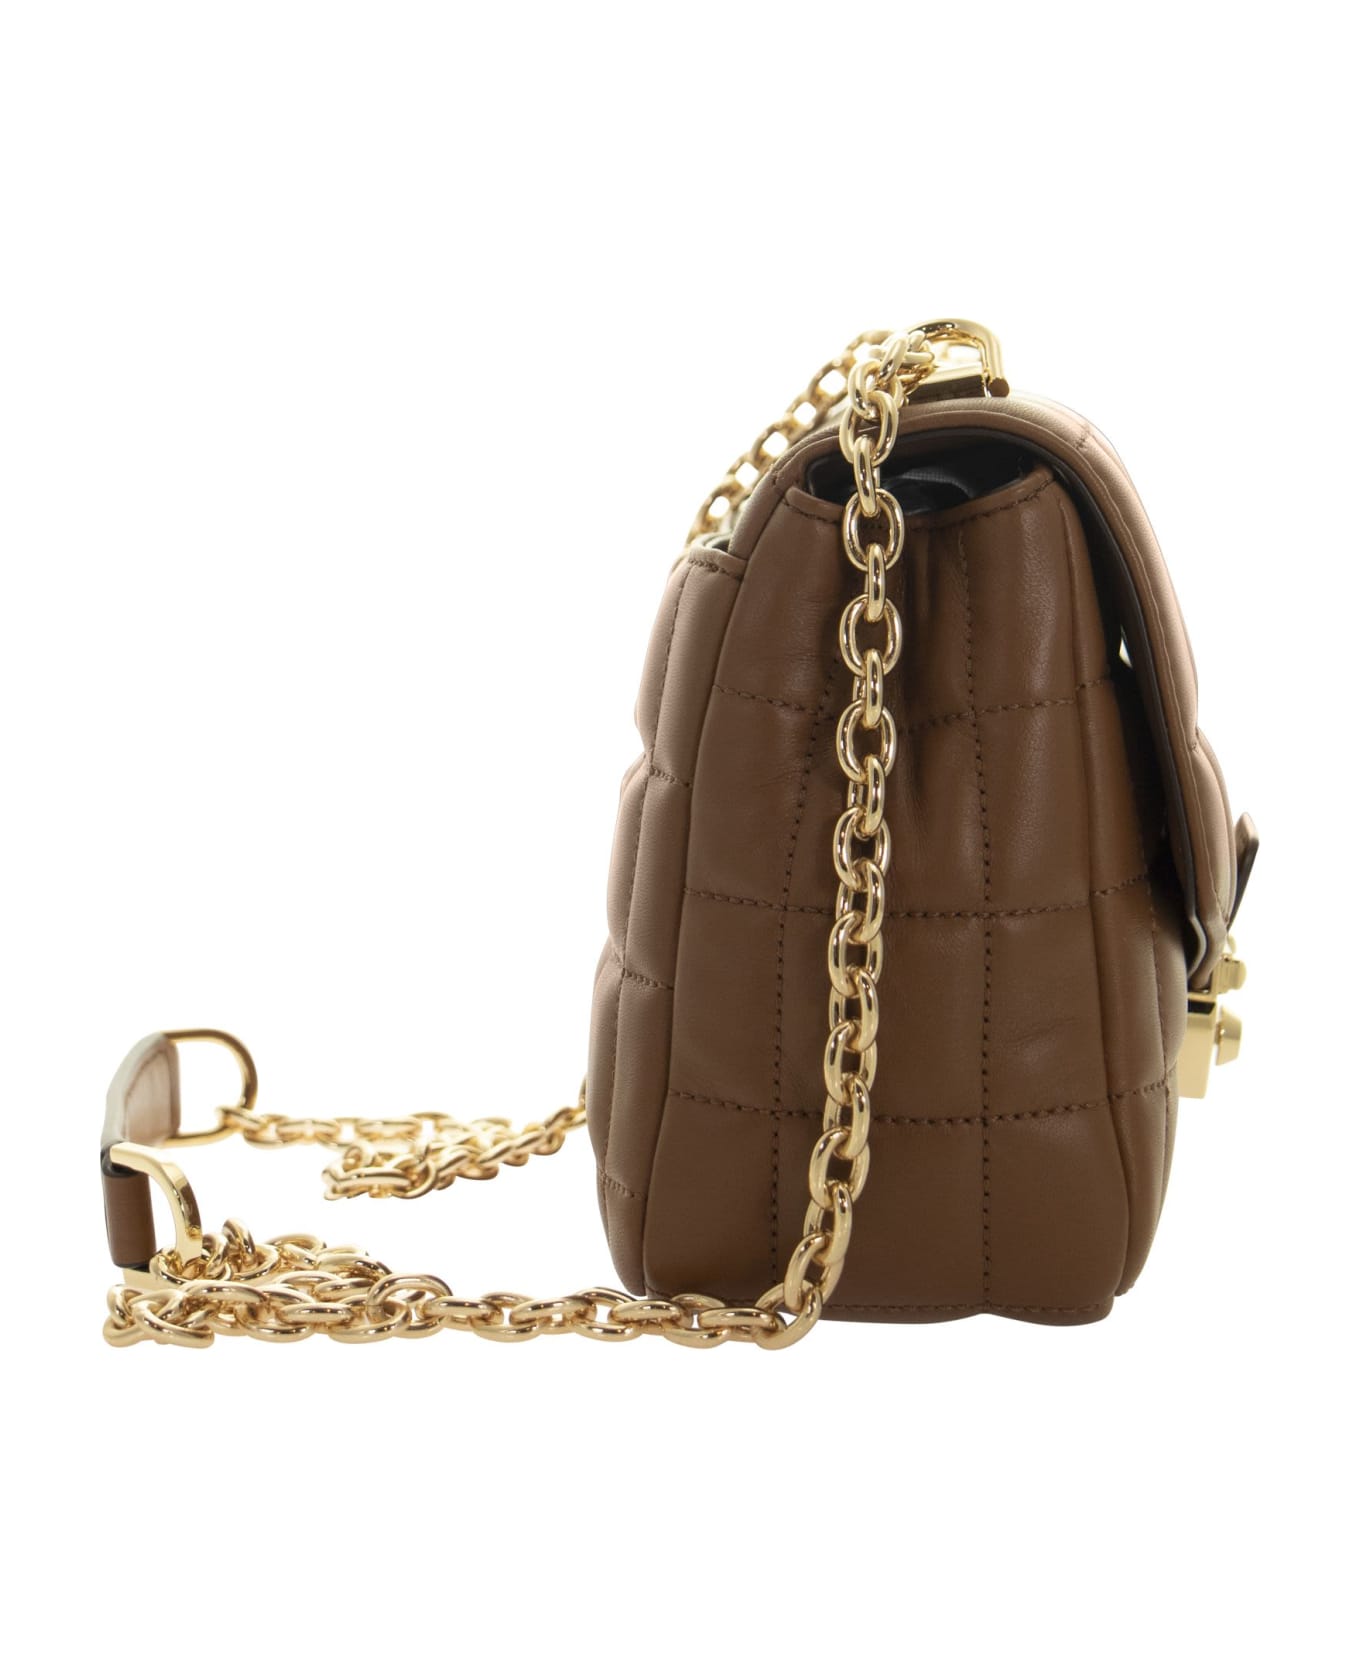 Michael Kors Soho - Quilted Leather Shoulder Bag - Brown